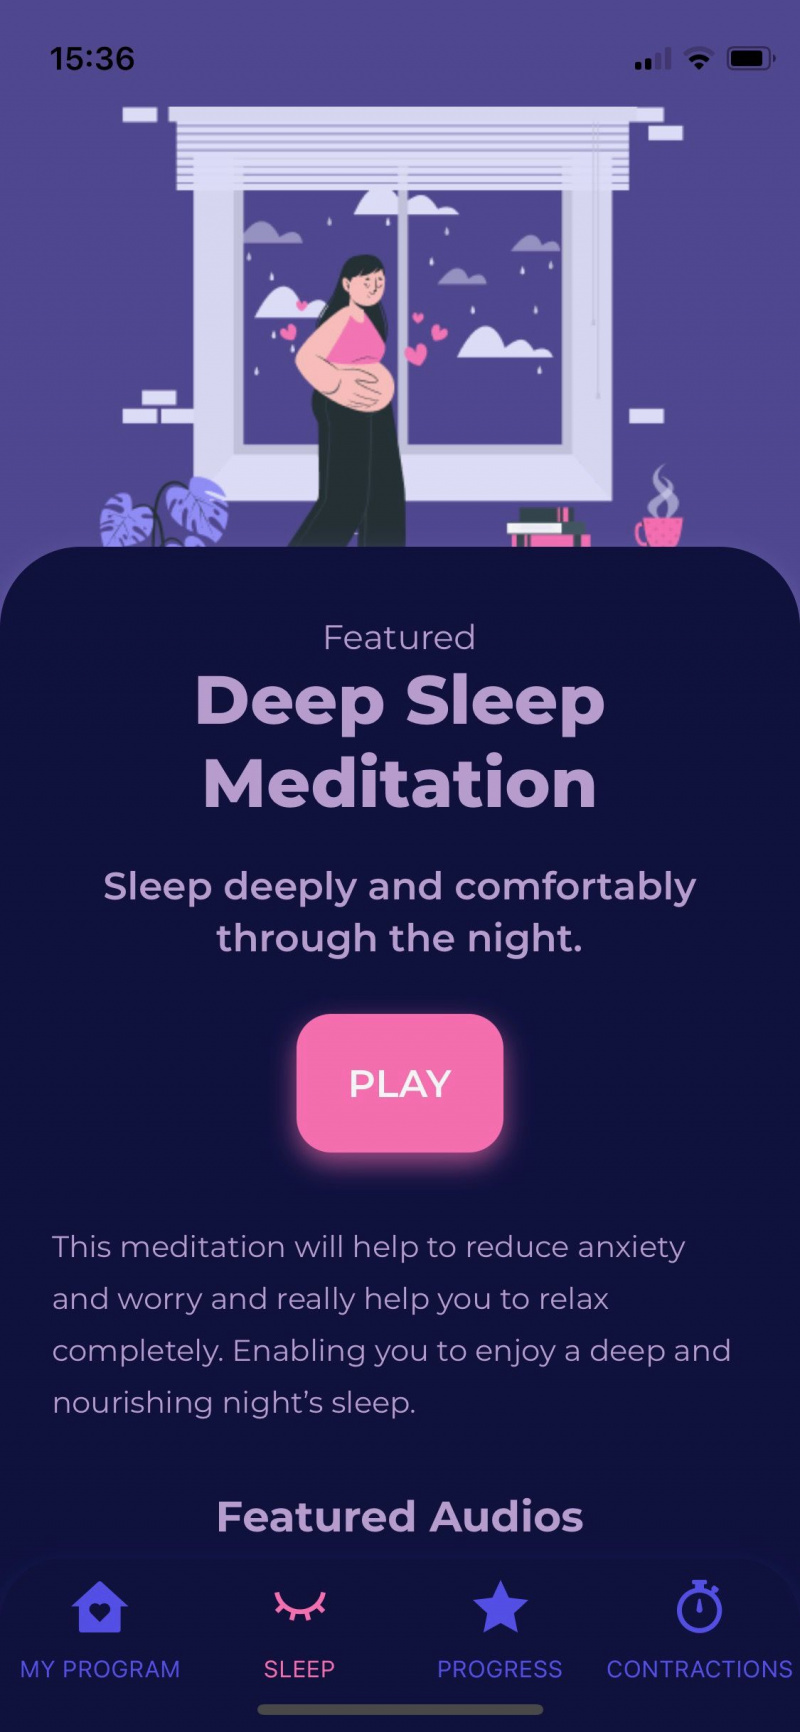   Captura de tela do aplicativo Blessed mostrando a meditação do sono profundo